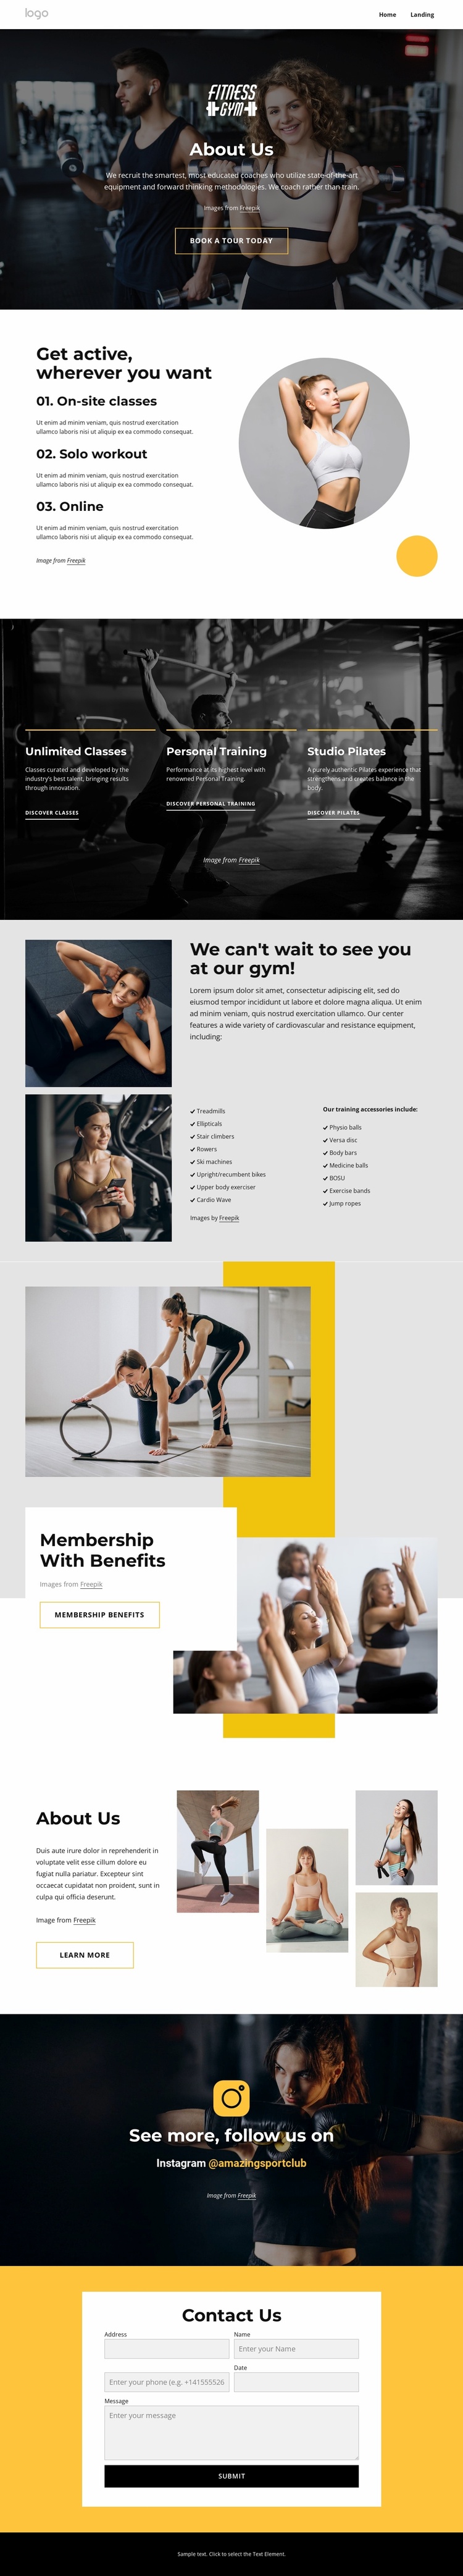 Sport and wellness center Website Template